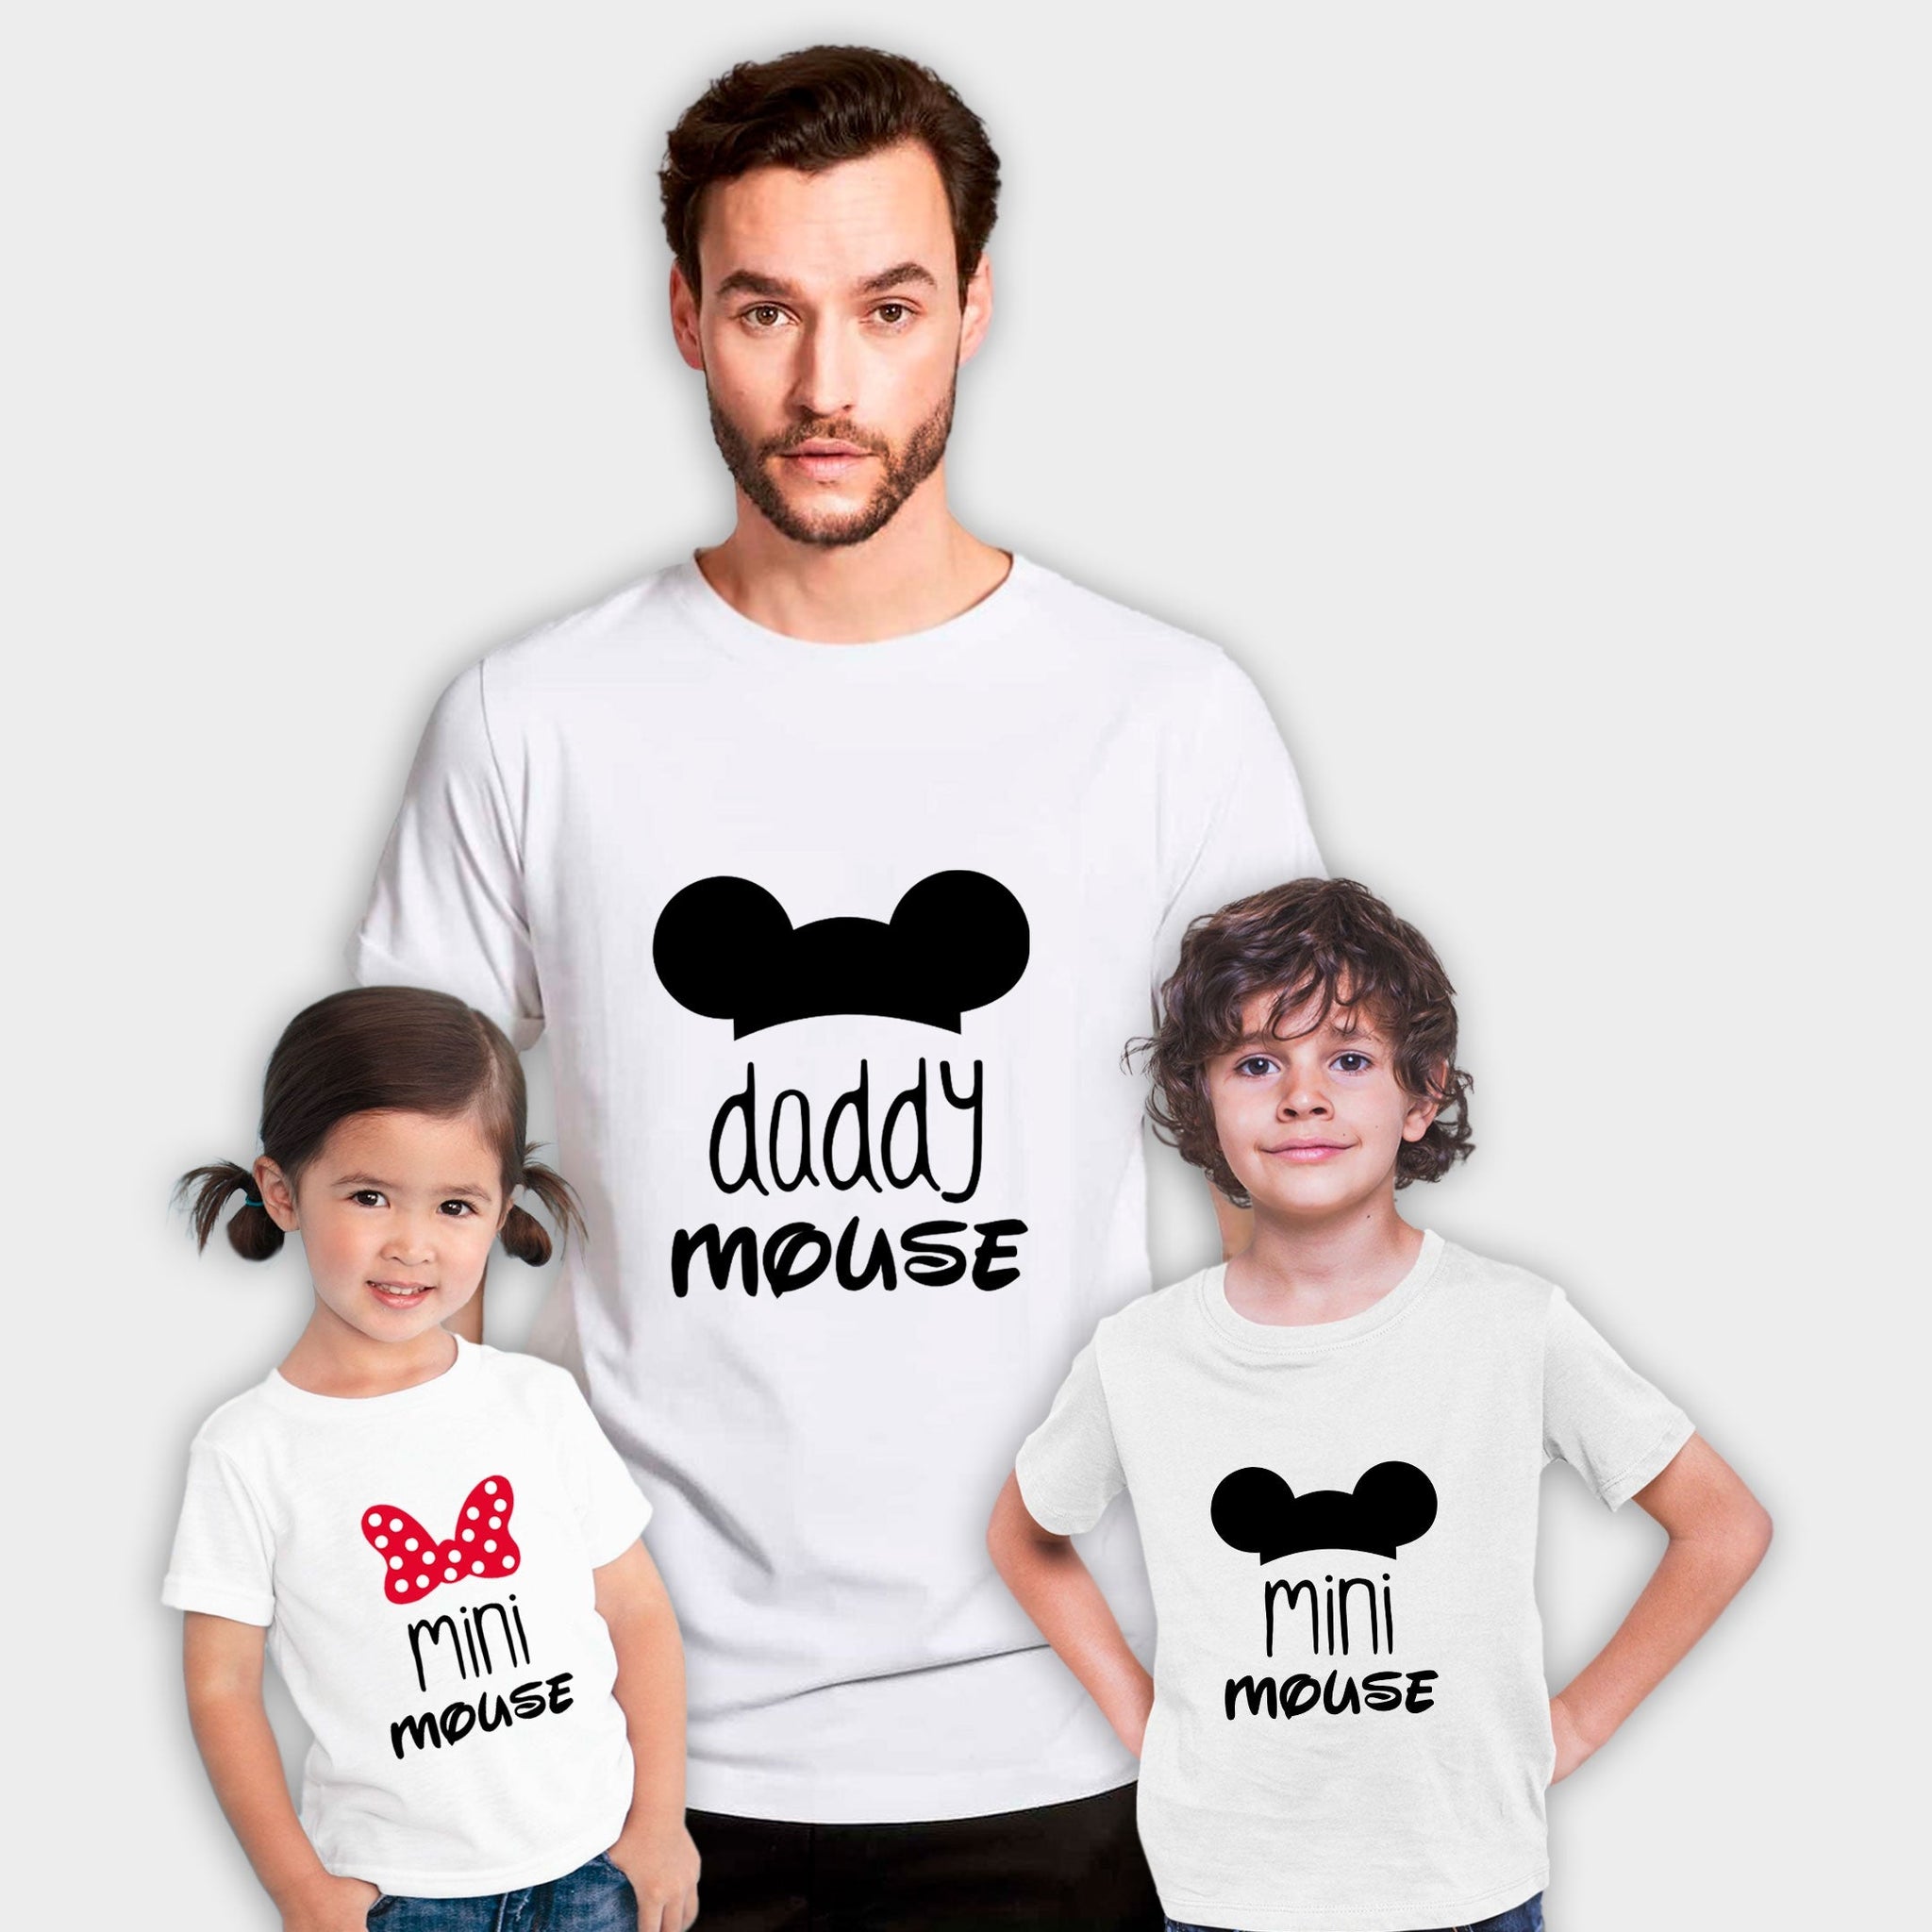 Camiseta Mama-daddy mouse mini mouse!!